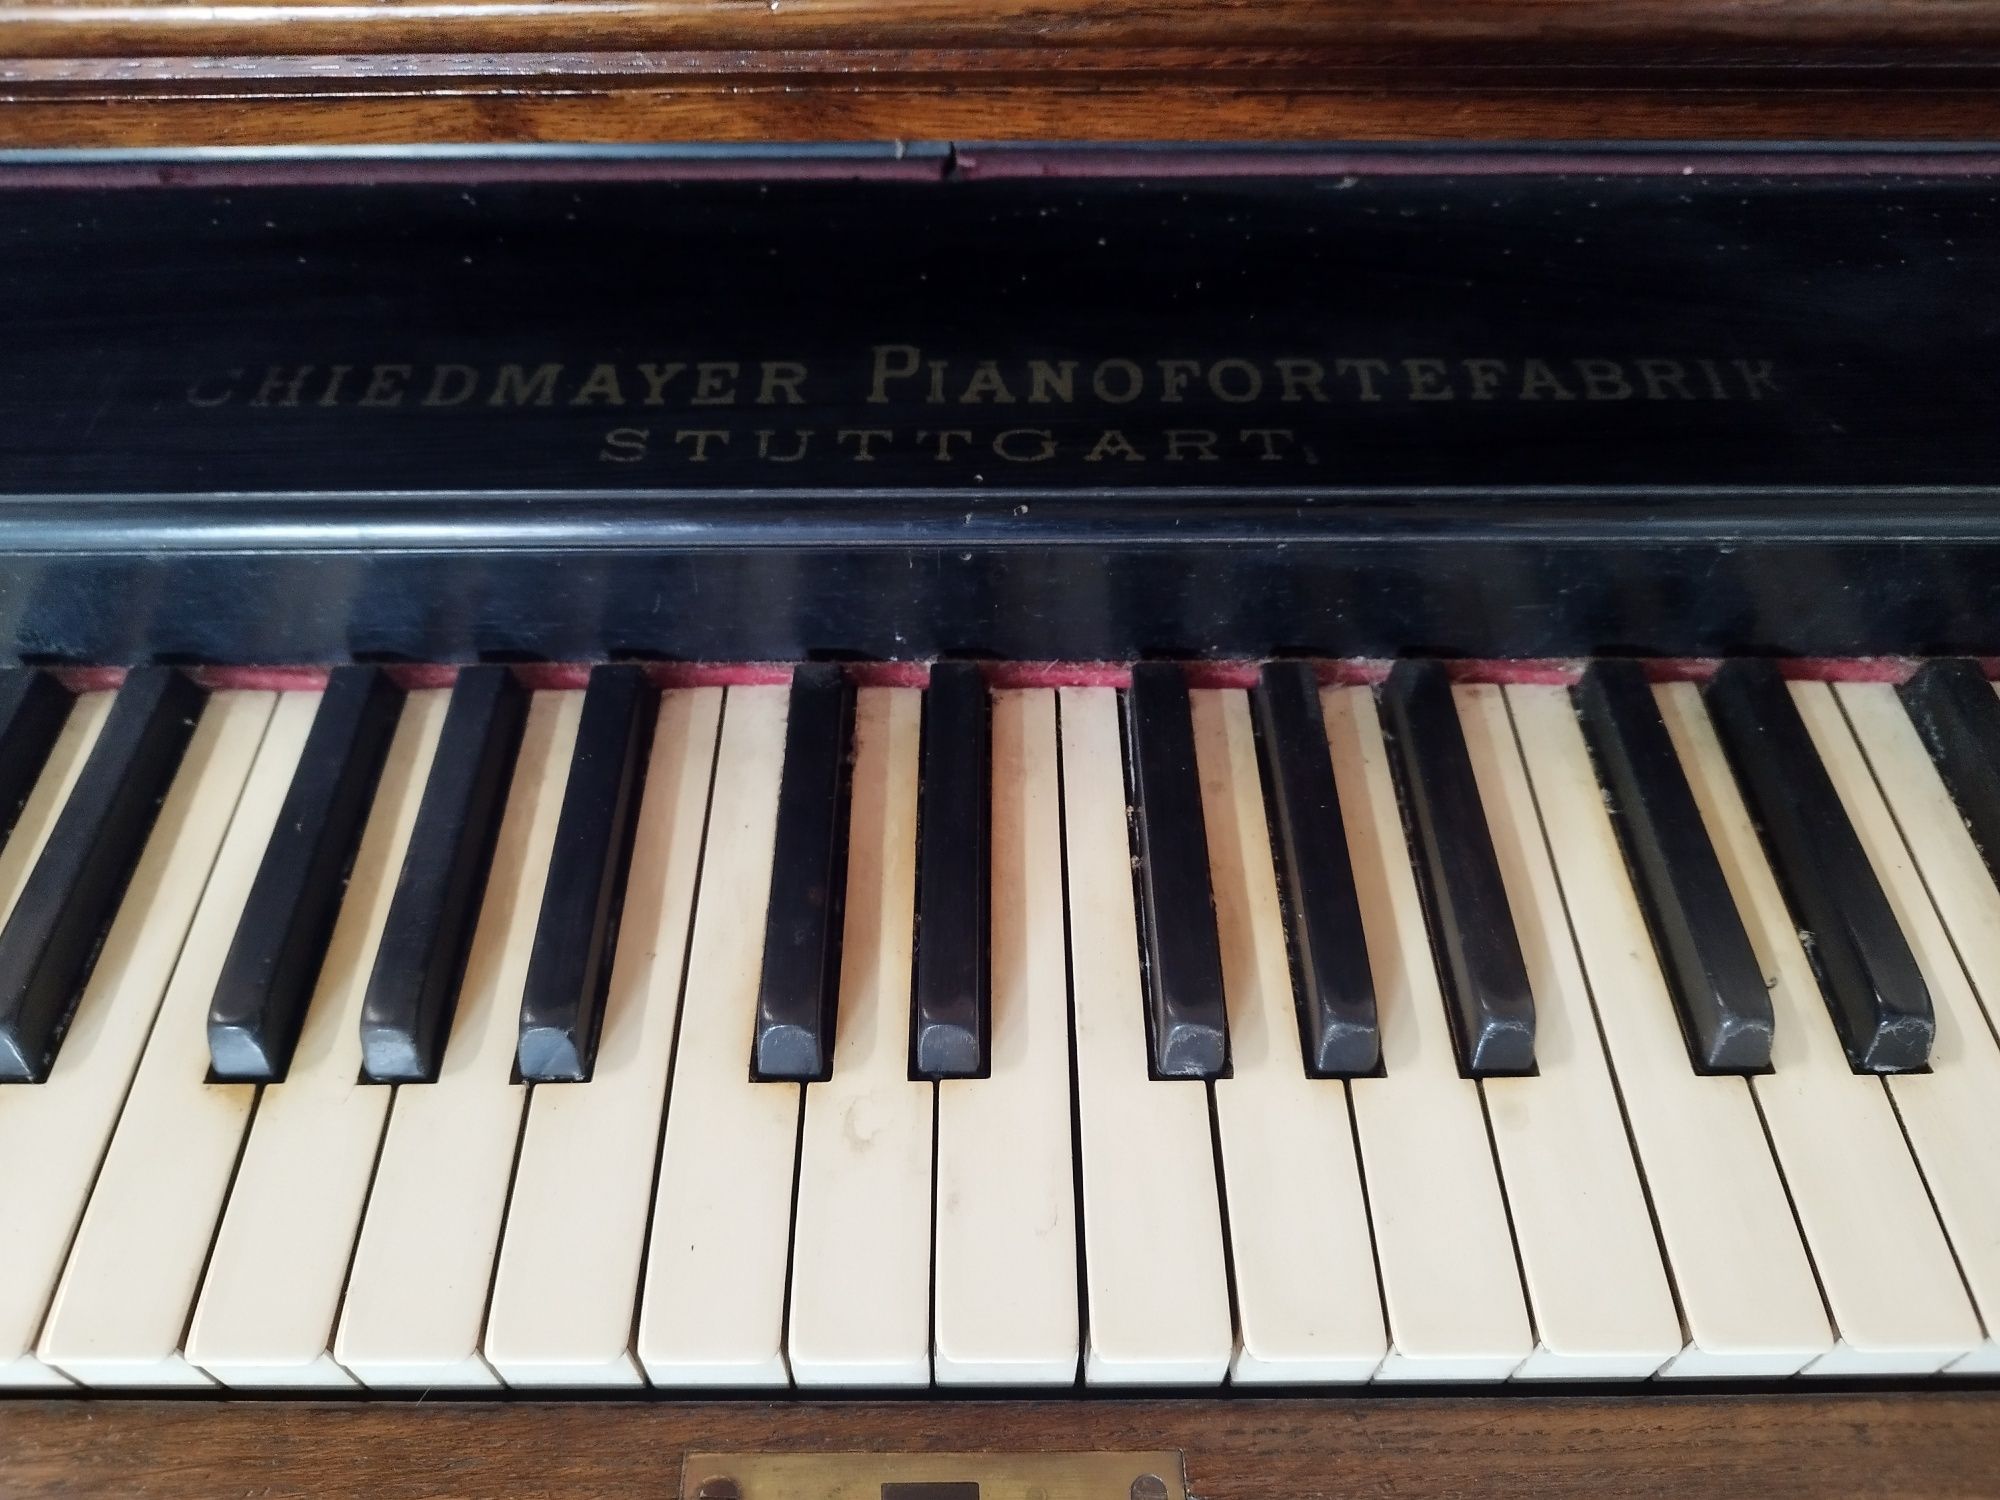 Fisharmonia Antyk CHiedmayer Pianofortefabrik